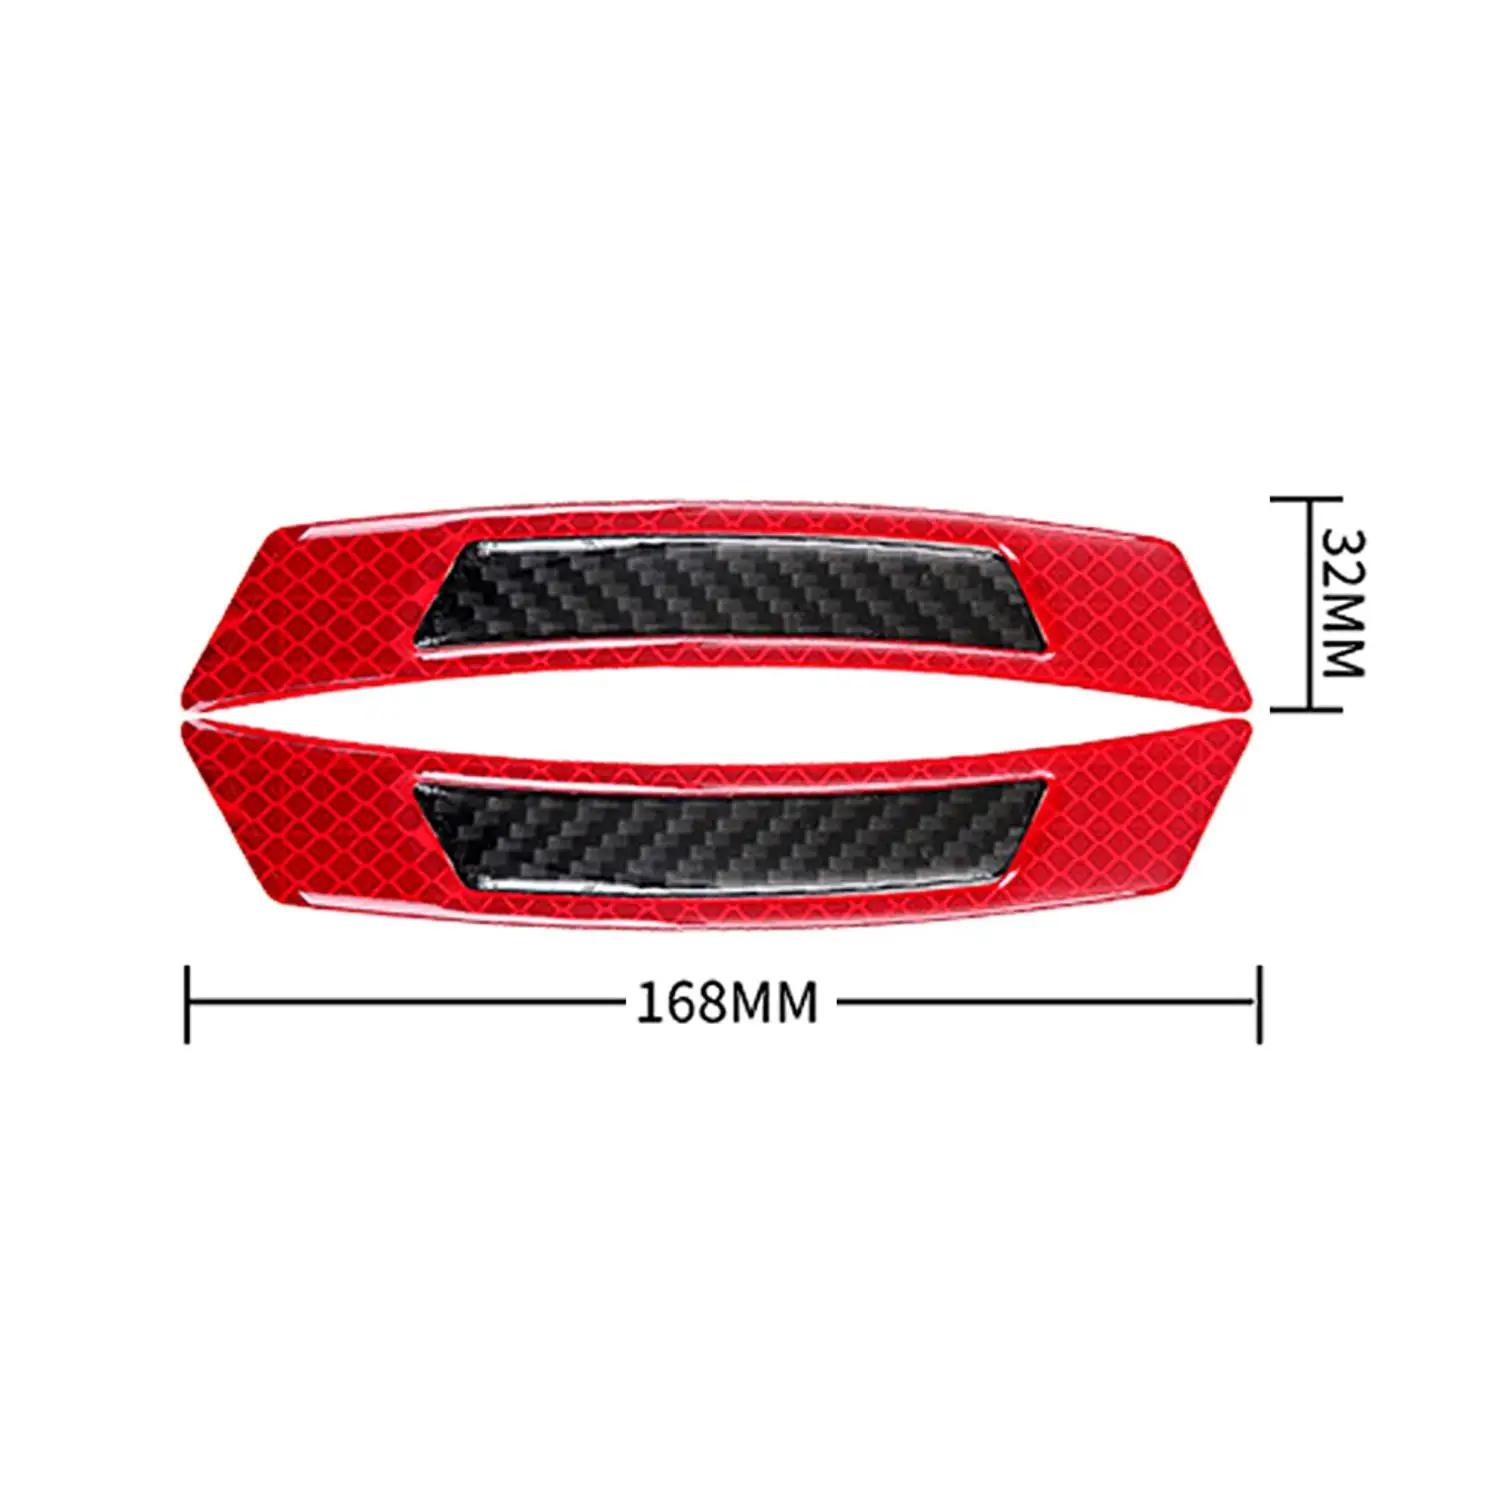 2 шт./компл. автомобиля Светоотражающая Предупреждение ленты бампер автомобиля со светоотражающими элементами безопасности отражающие наклейки 16,8*3,2 см - Цвет: Red Black